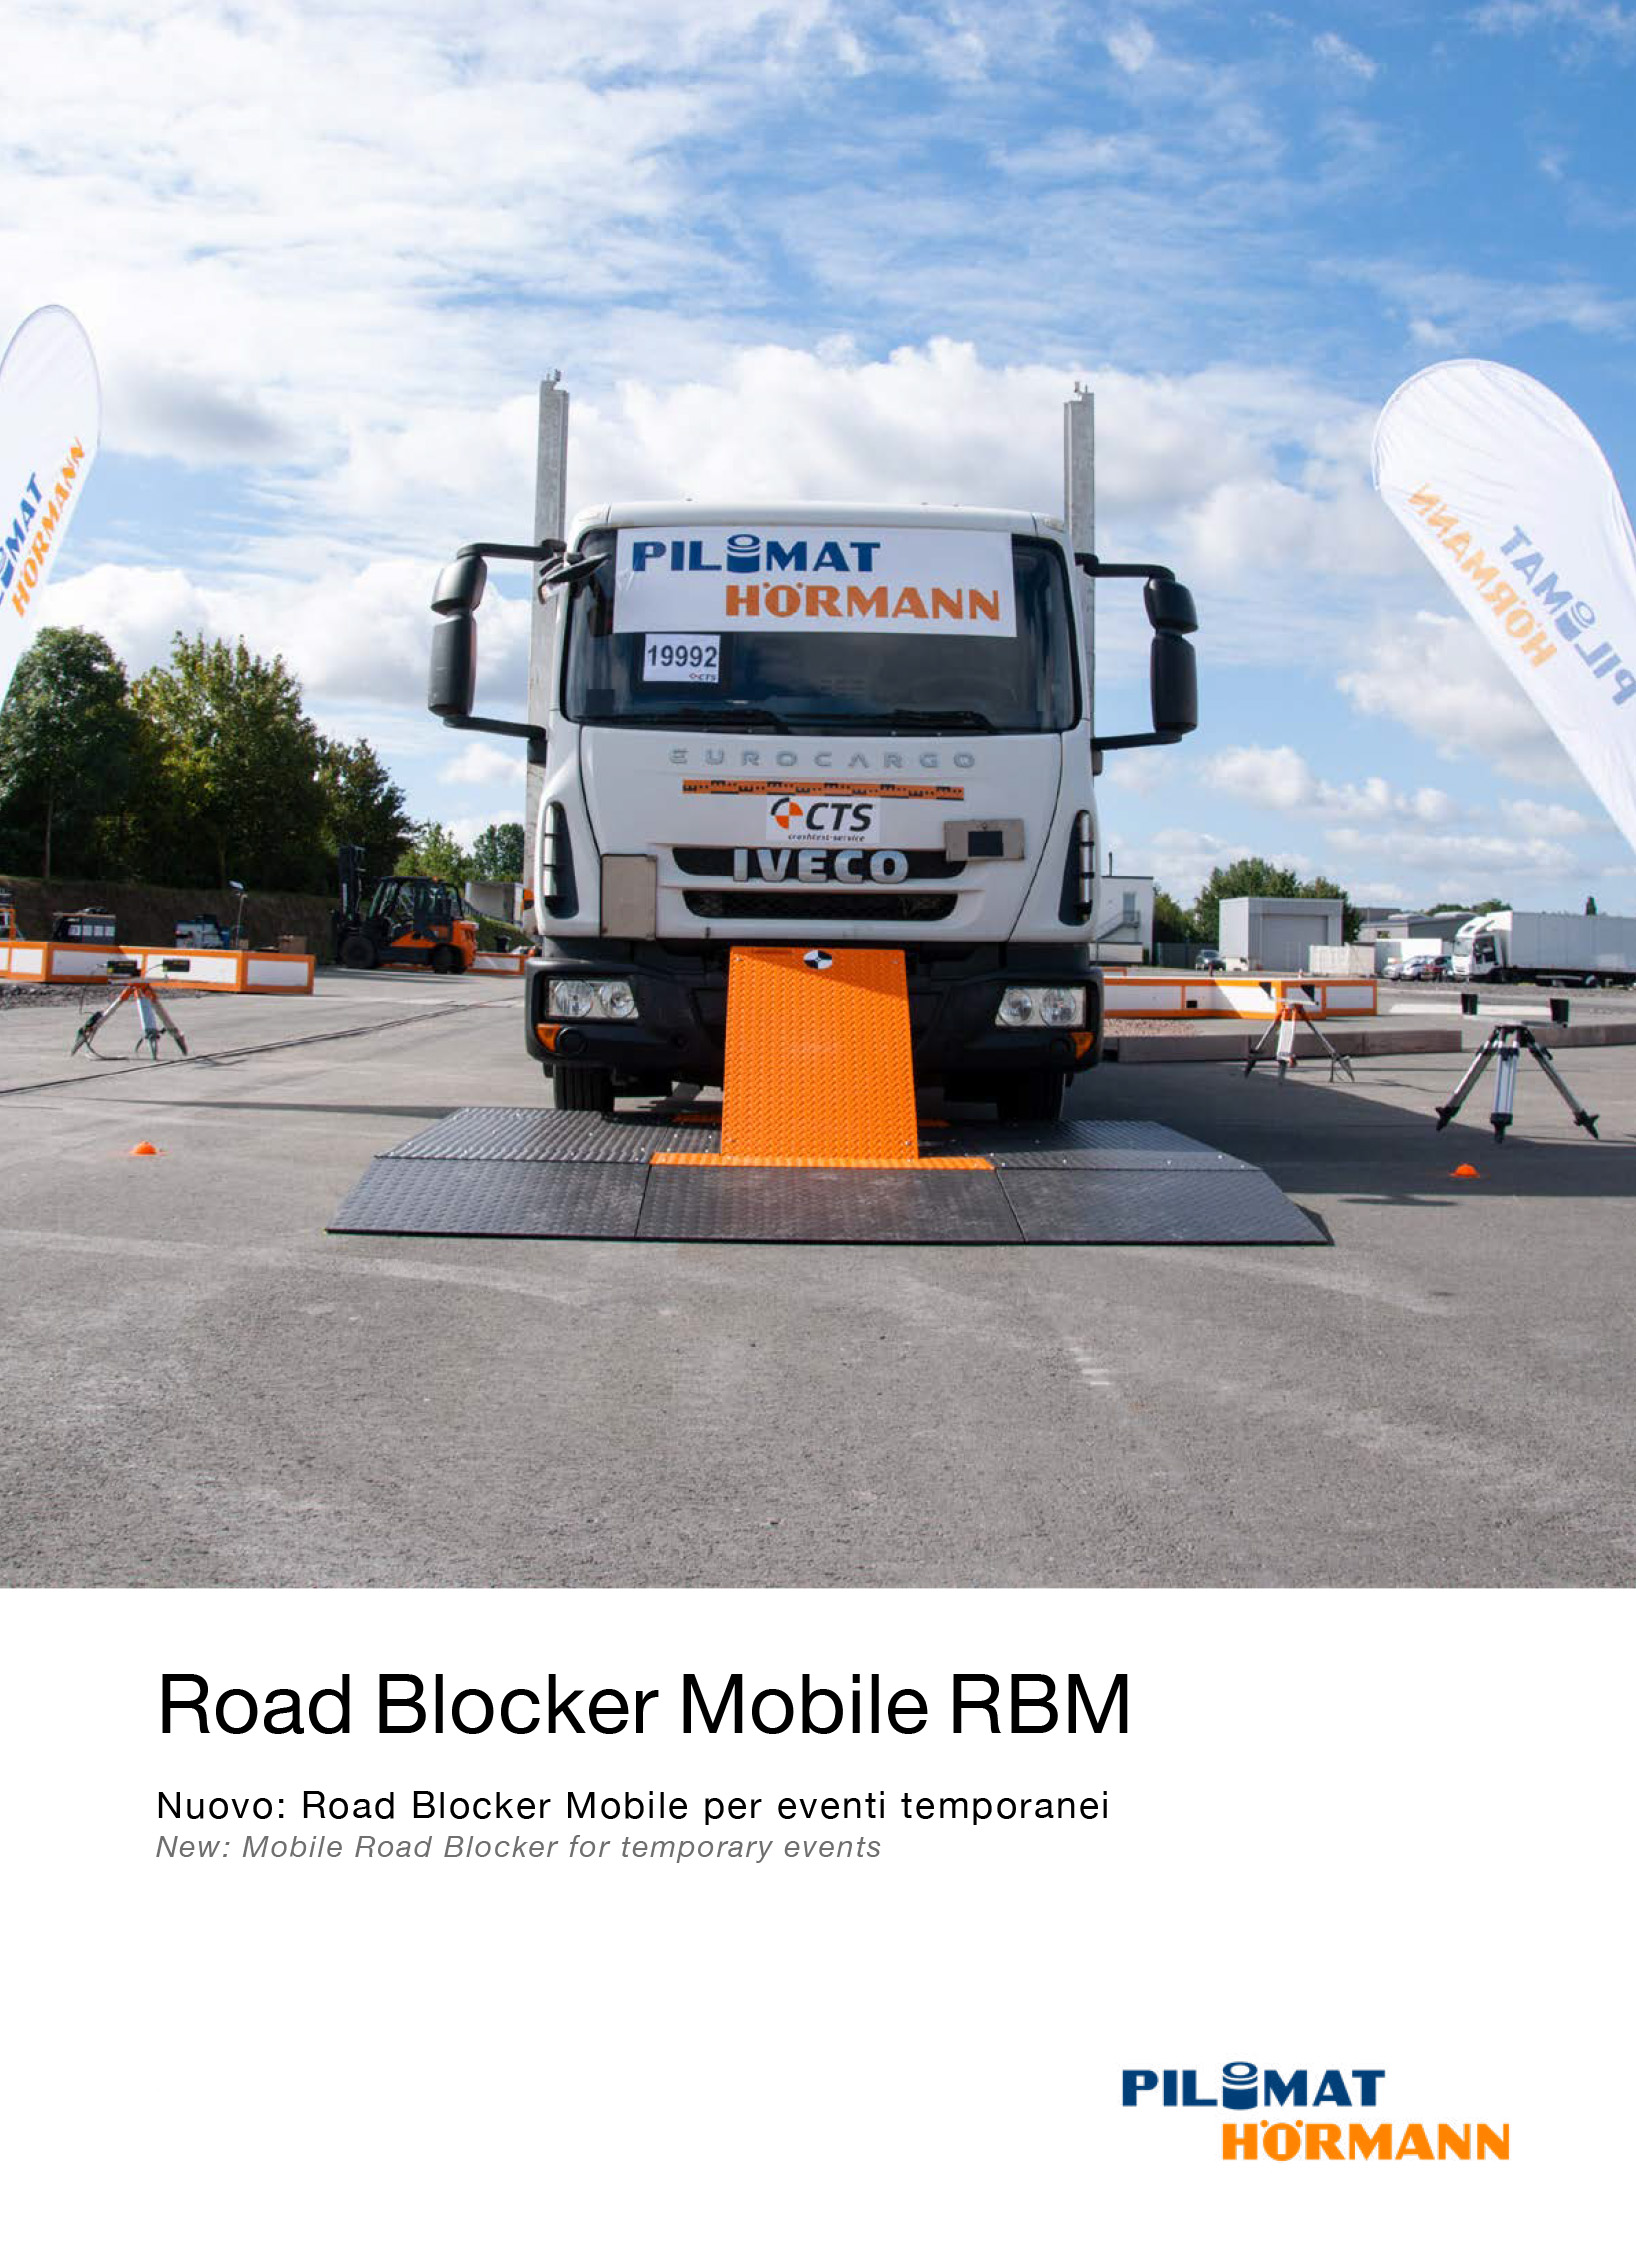 Immagine di copertina della brochure del Road blocker Mobile di Pilomat